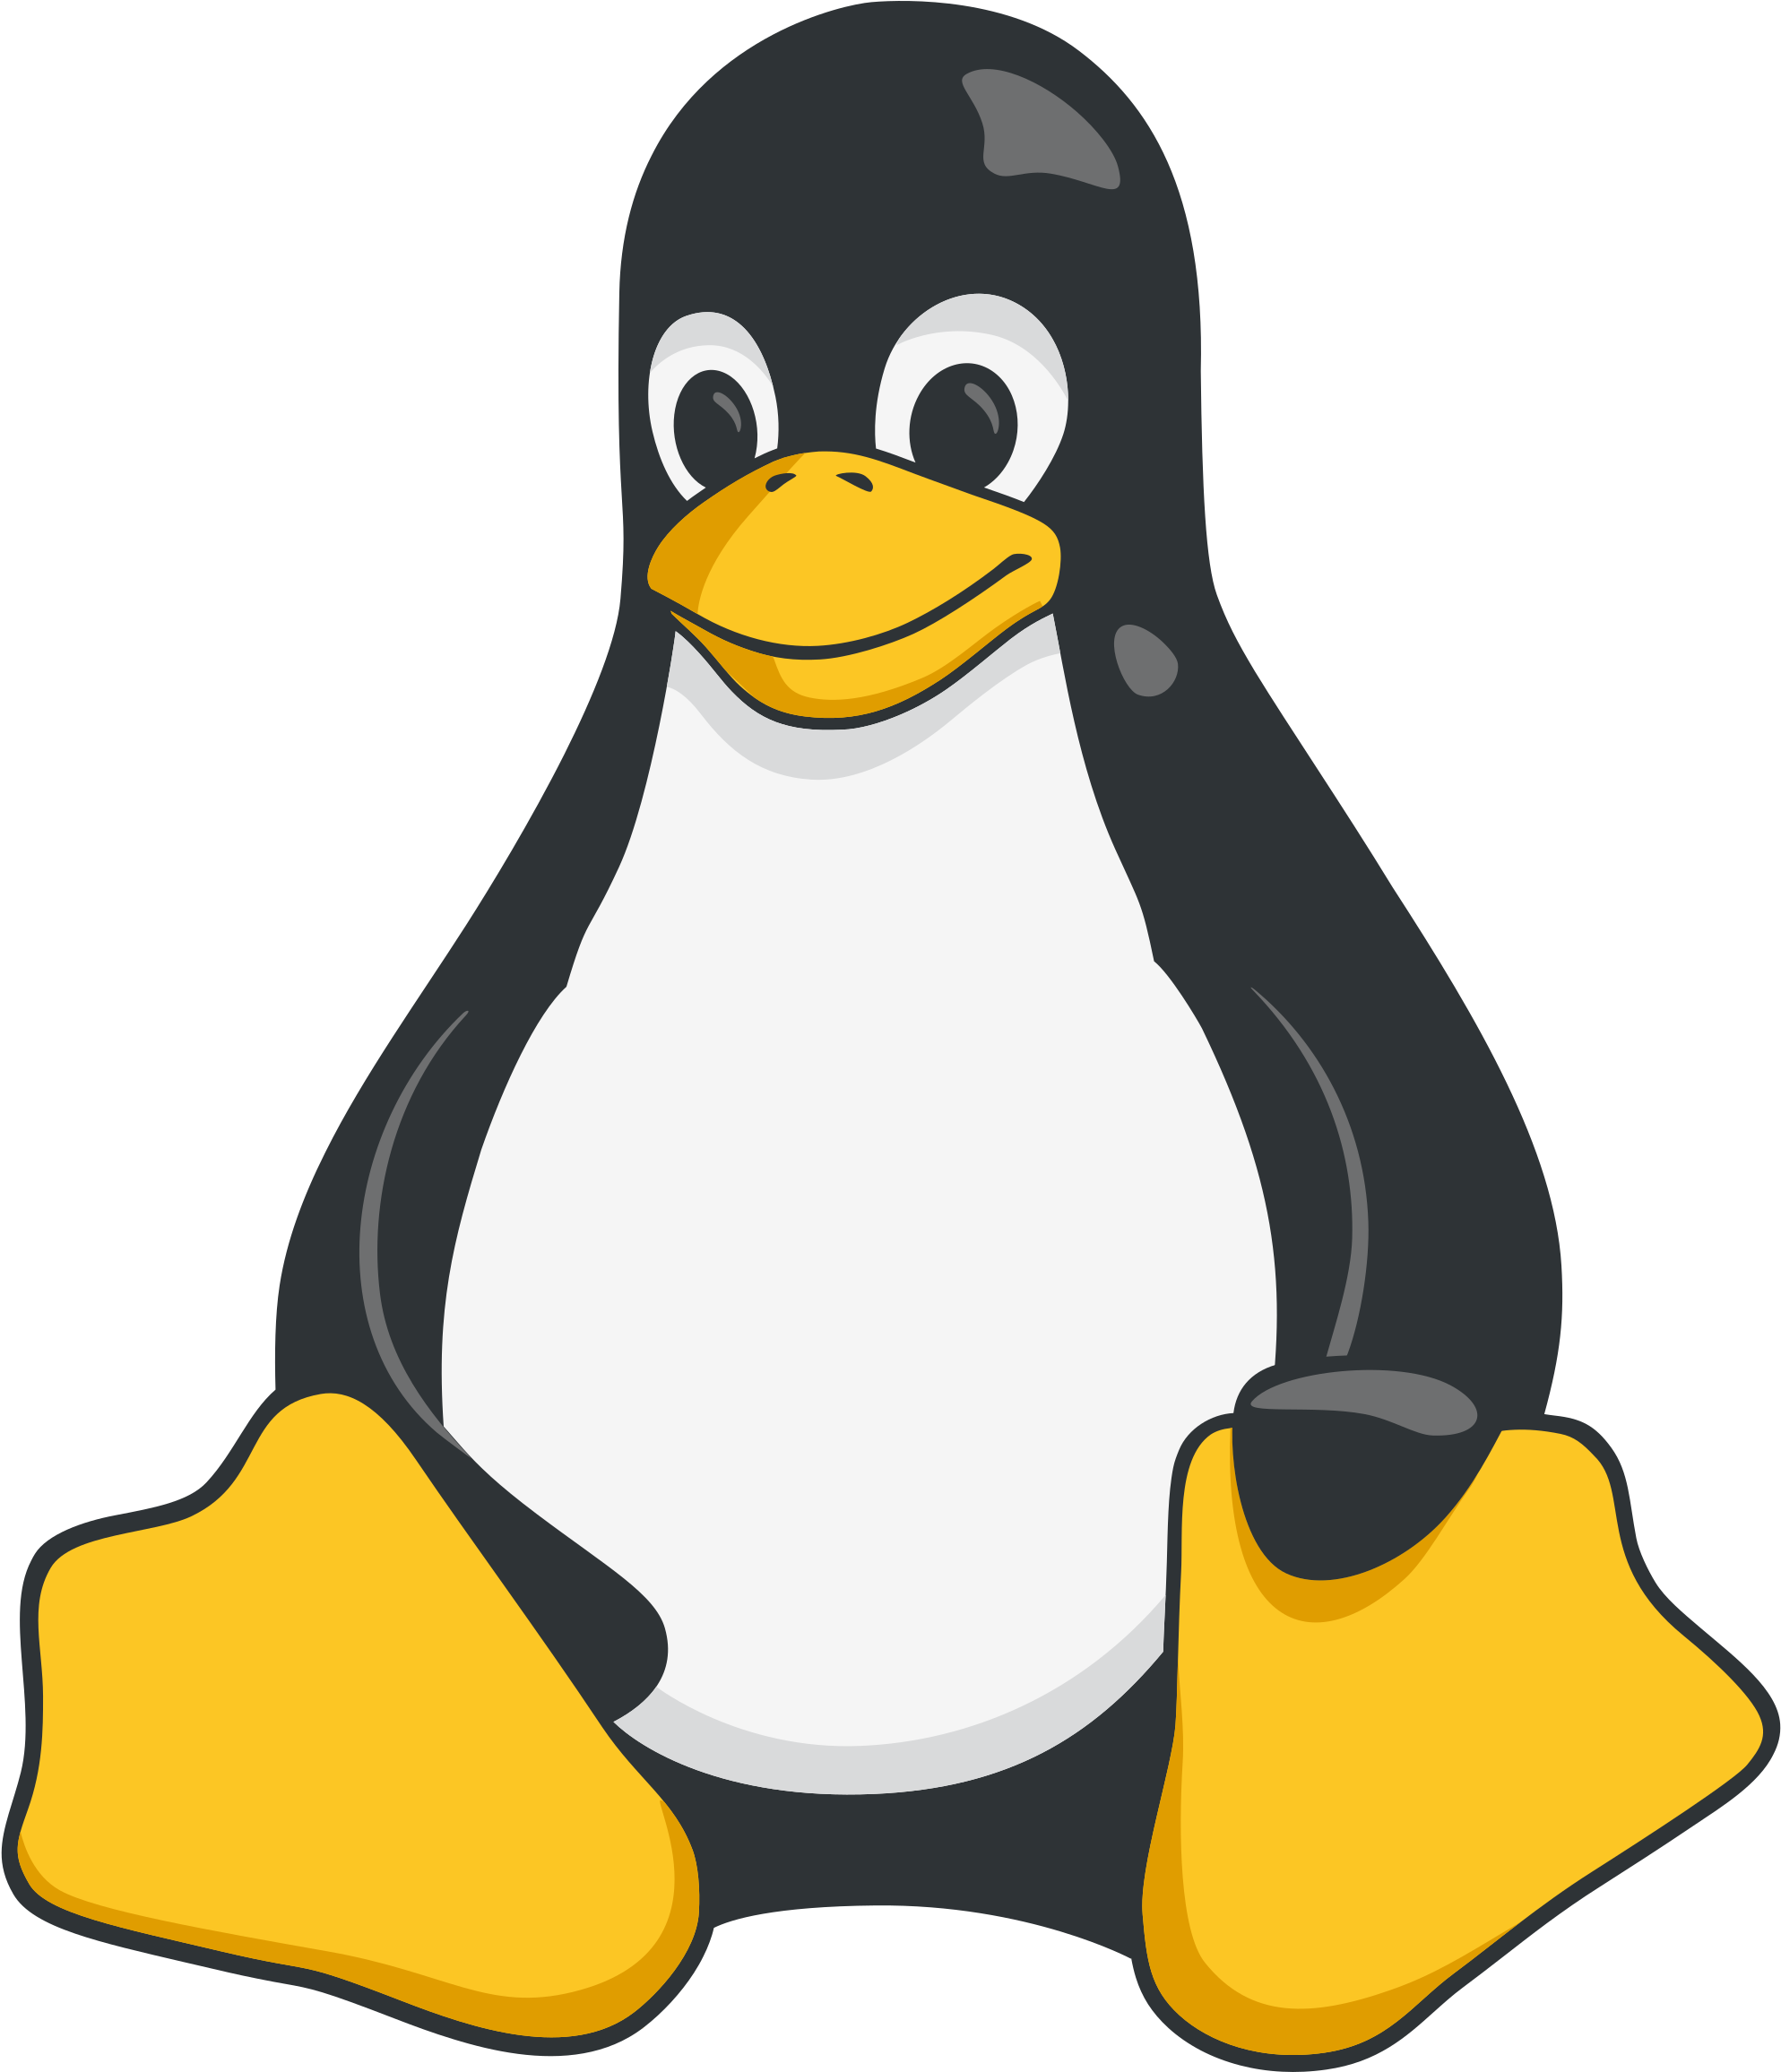 Score 50% - Linux Penguin (2100x2433)